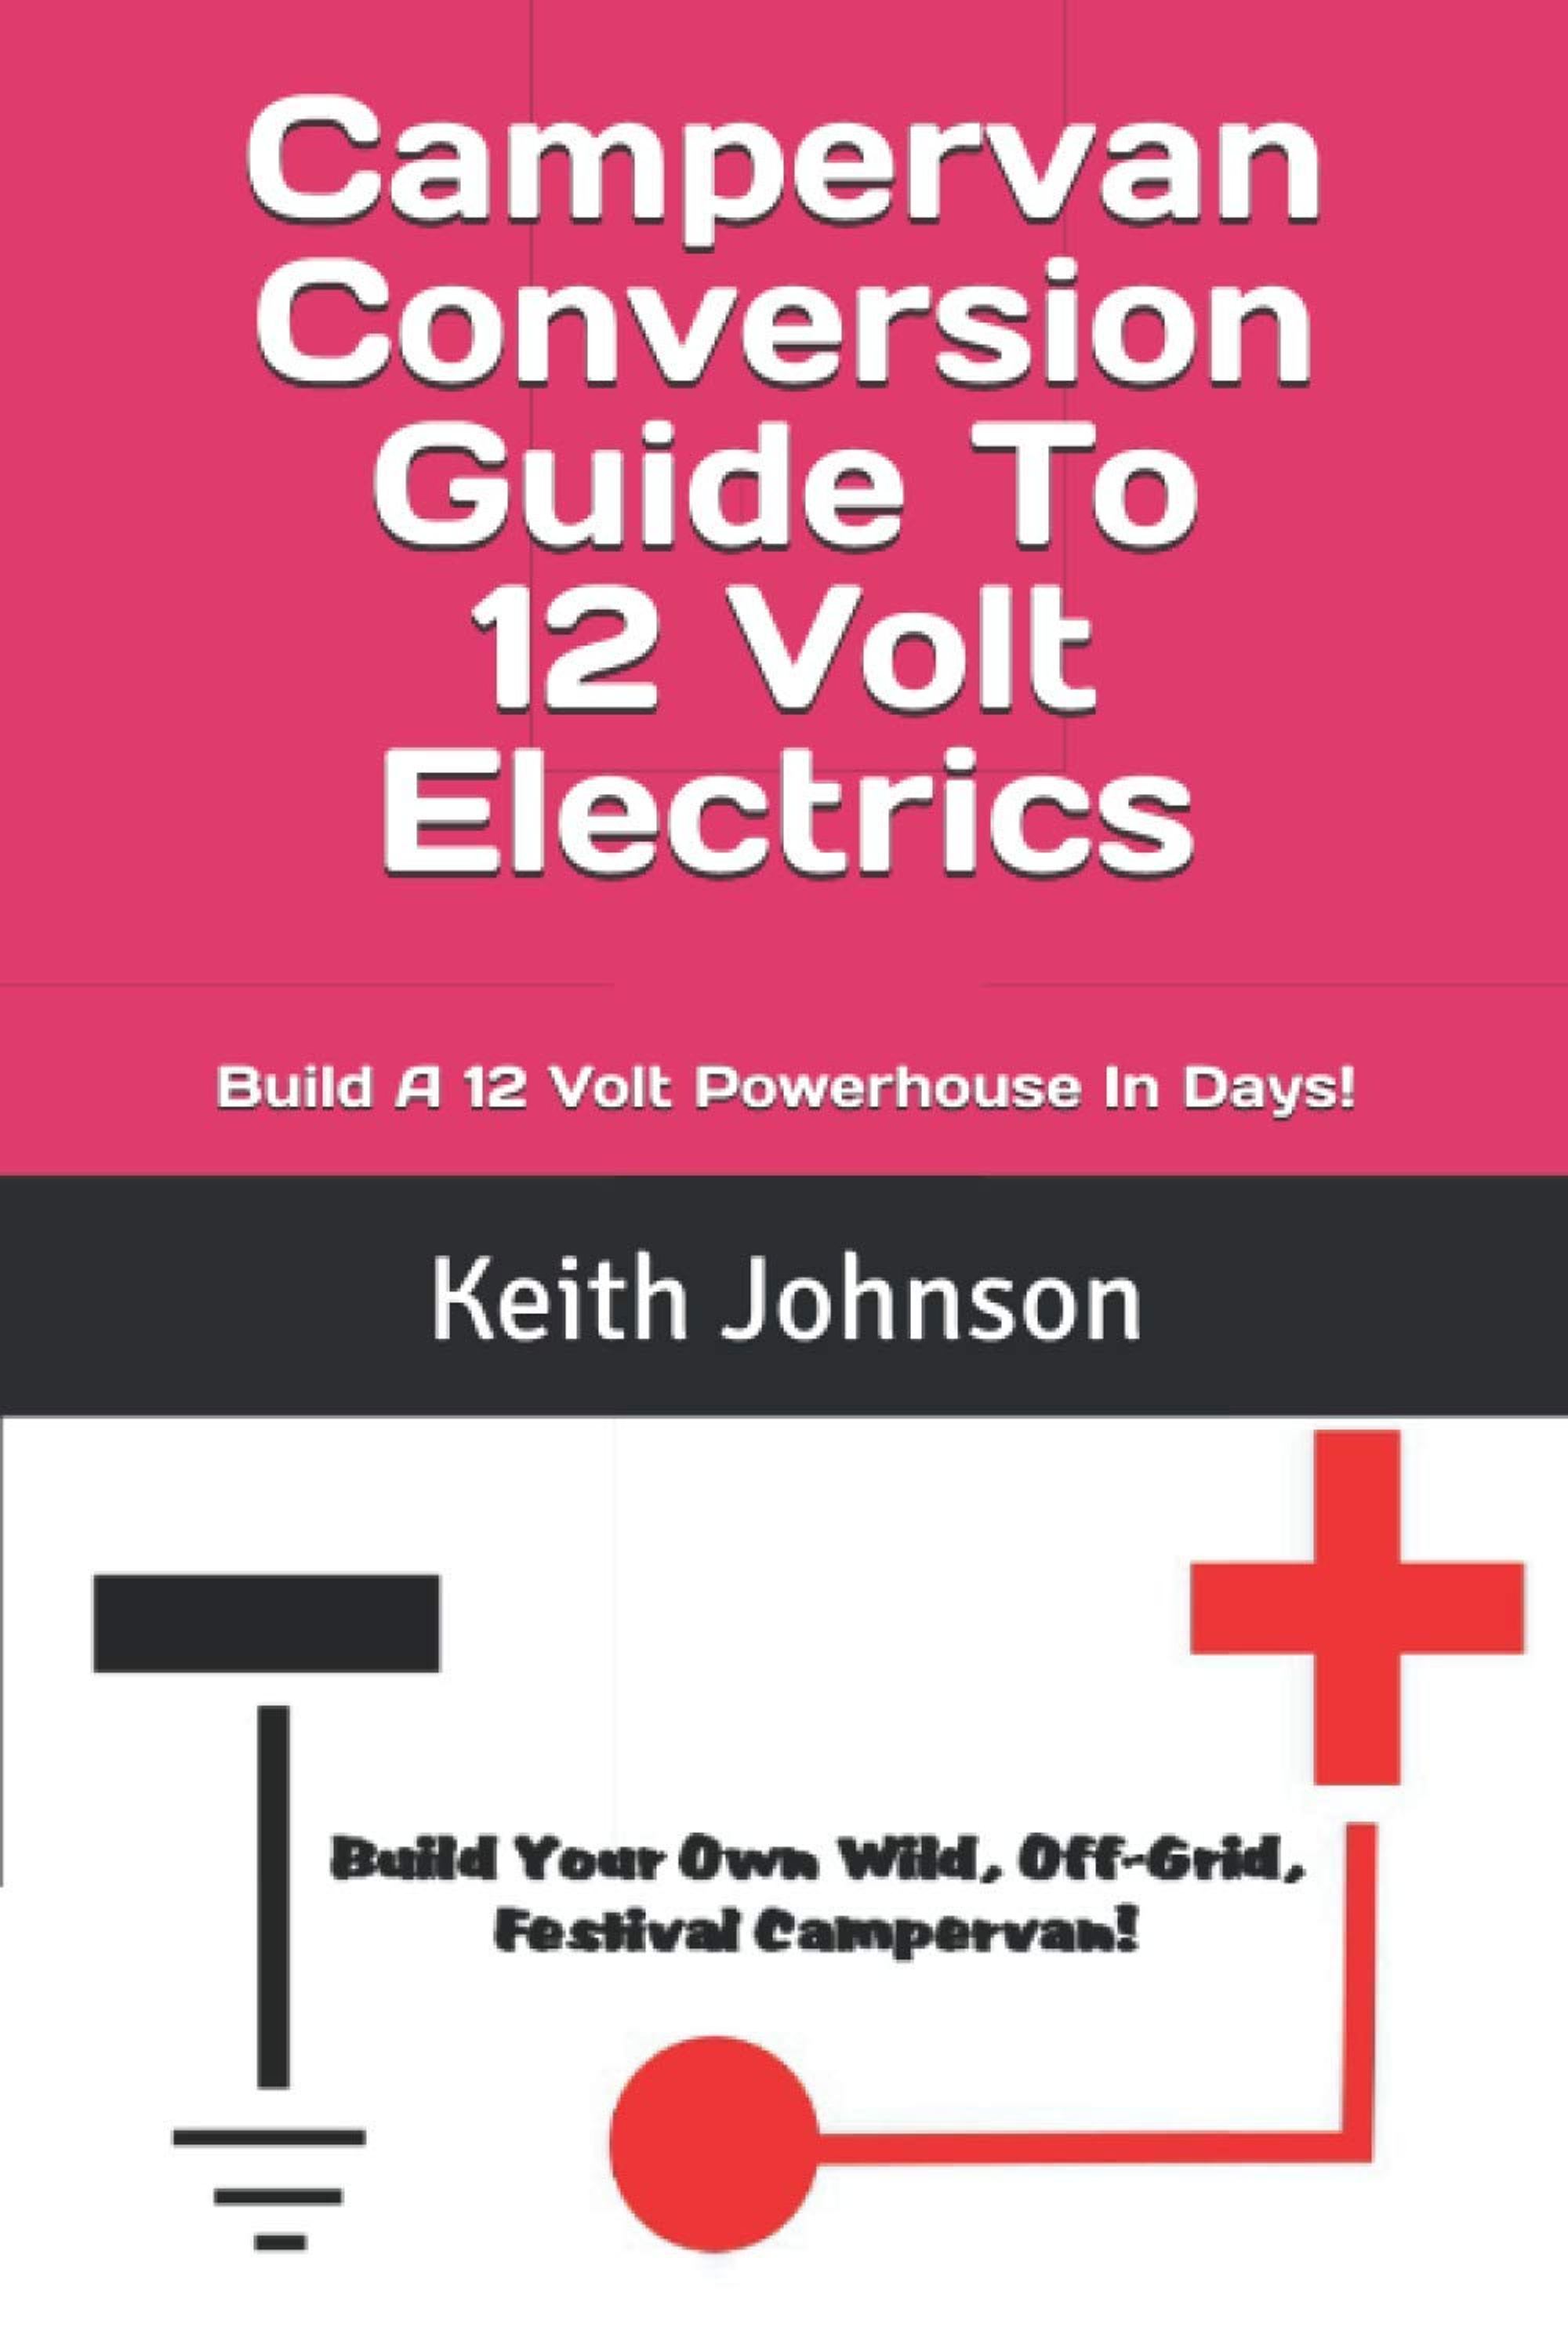 Build a 12 volt off-grid campervan or motorhome